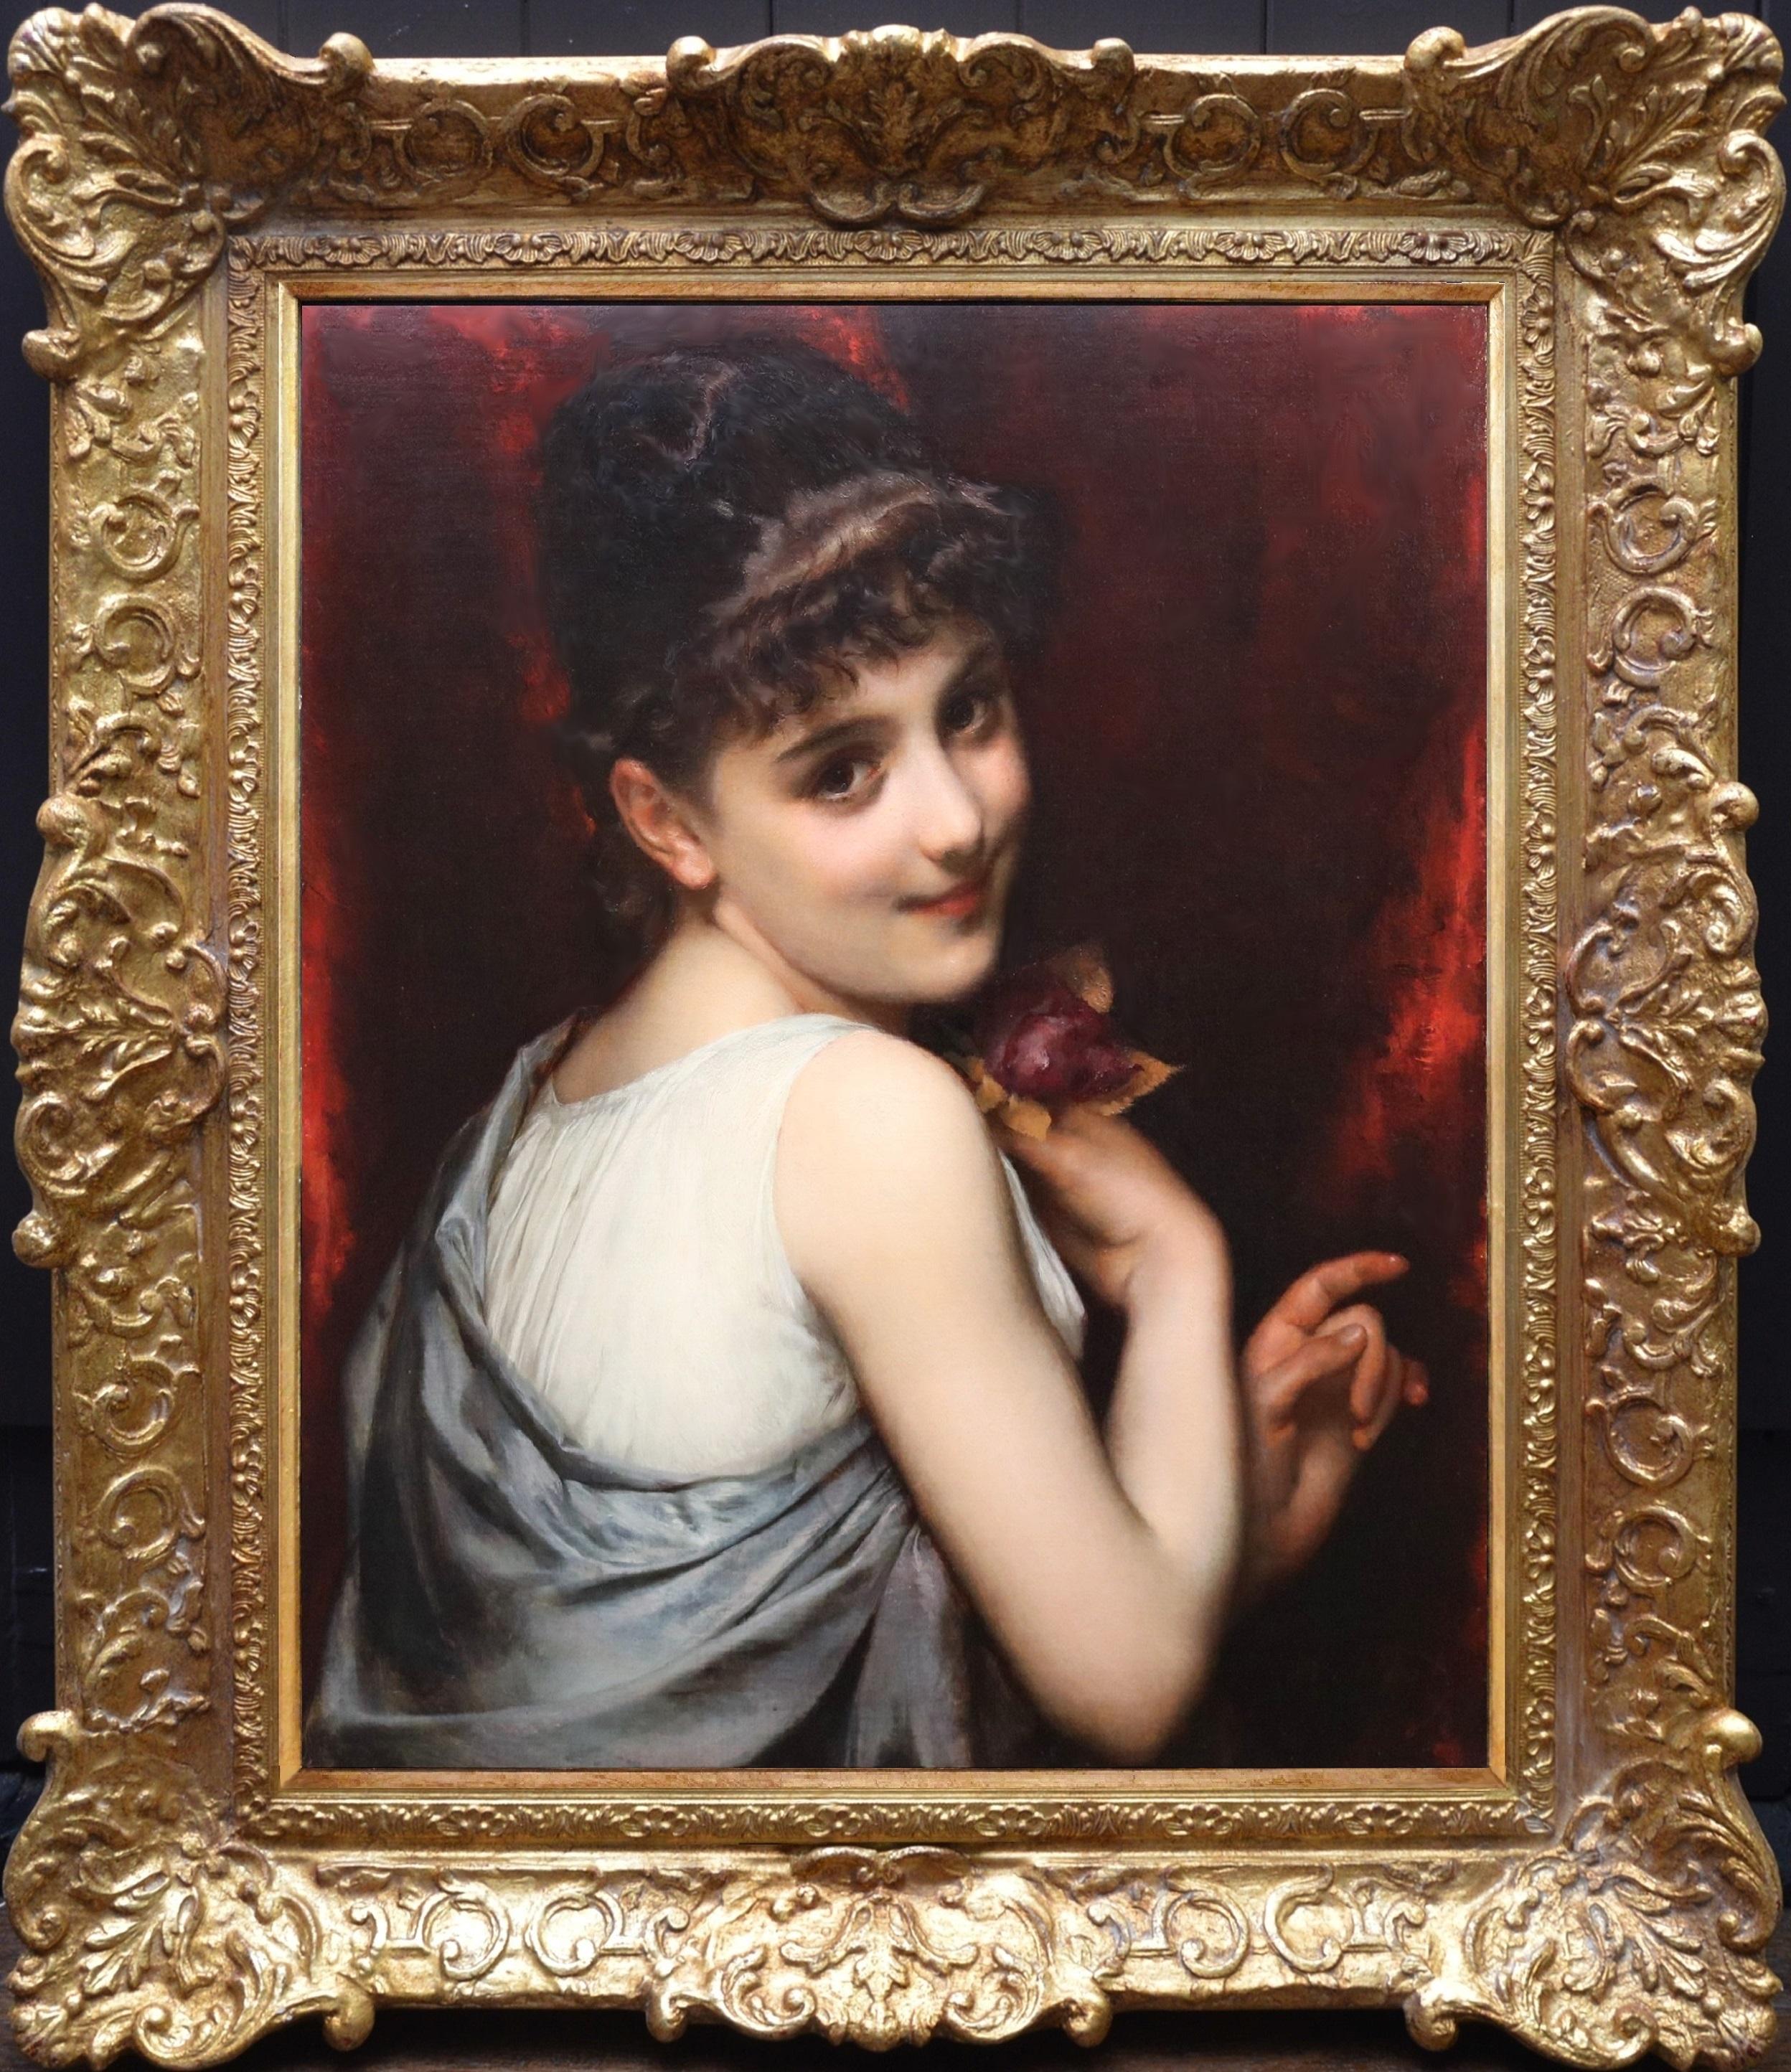 Young Belle Epoque Beauty – Porträt-Ölgemälde eines französischen Mädchens aus dem 19. Jahrhundert  – Painting von Etienne Adolphe Piot